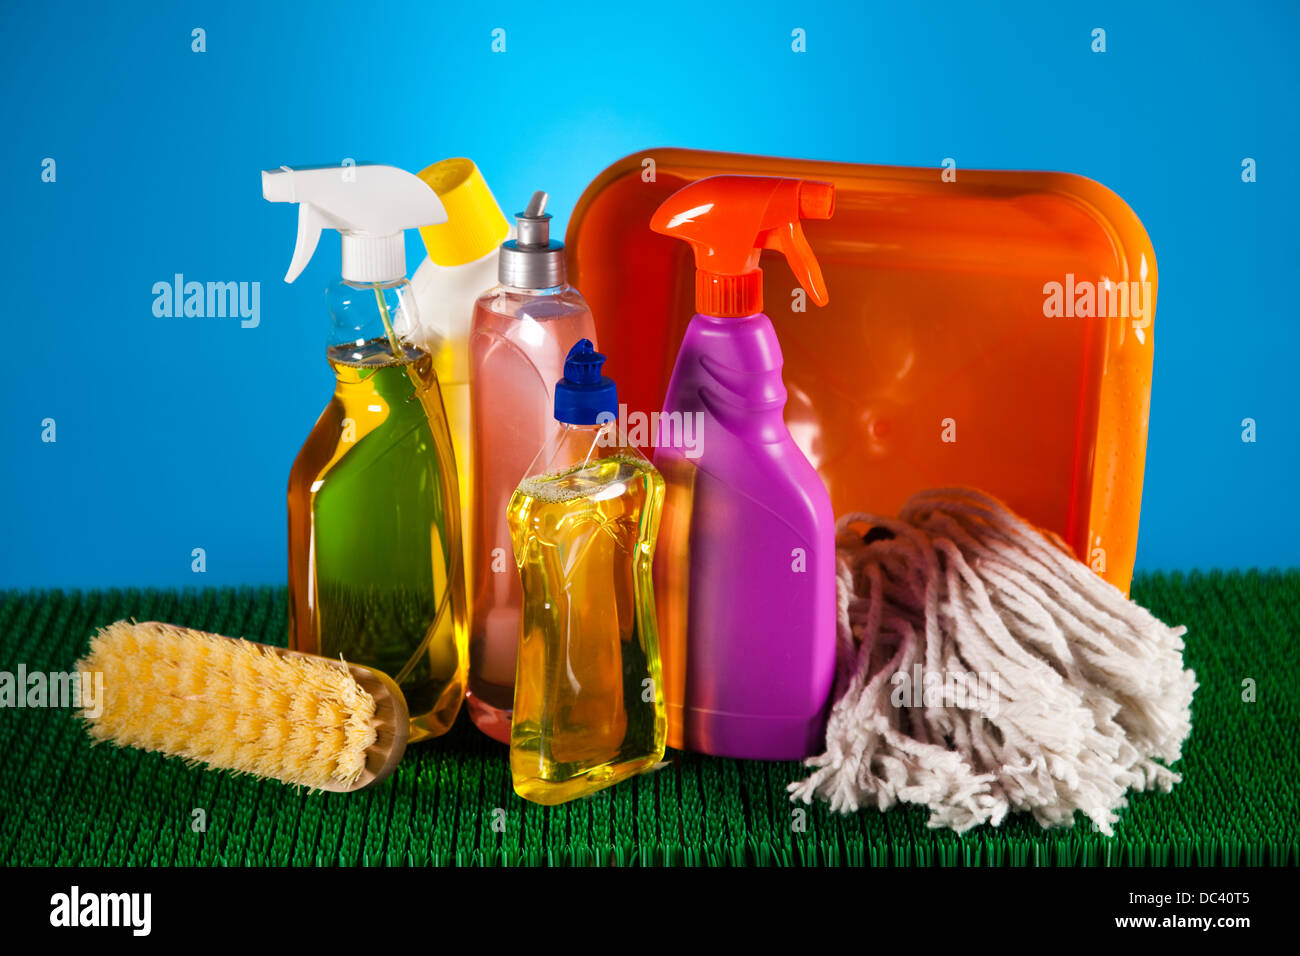 Ampia gamma di prodotti per la pulizia Foto Stock